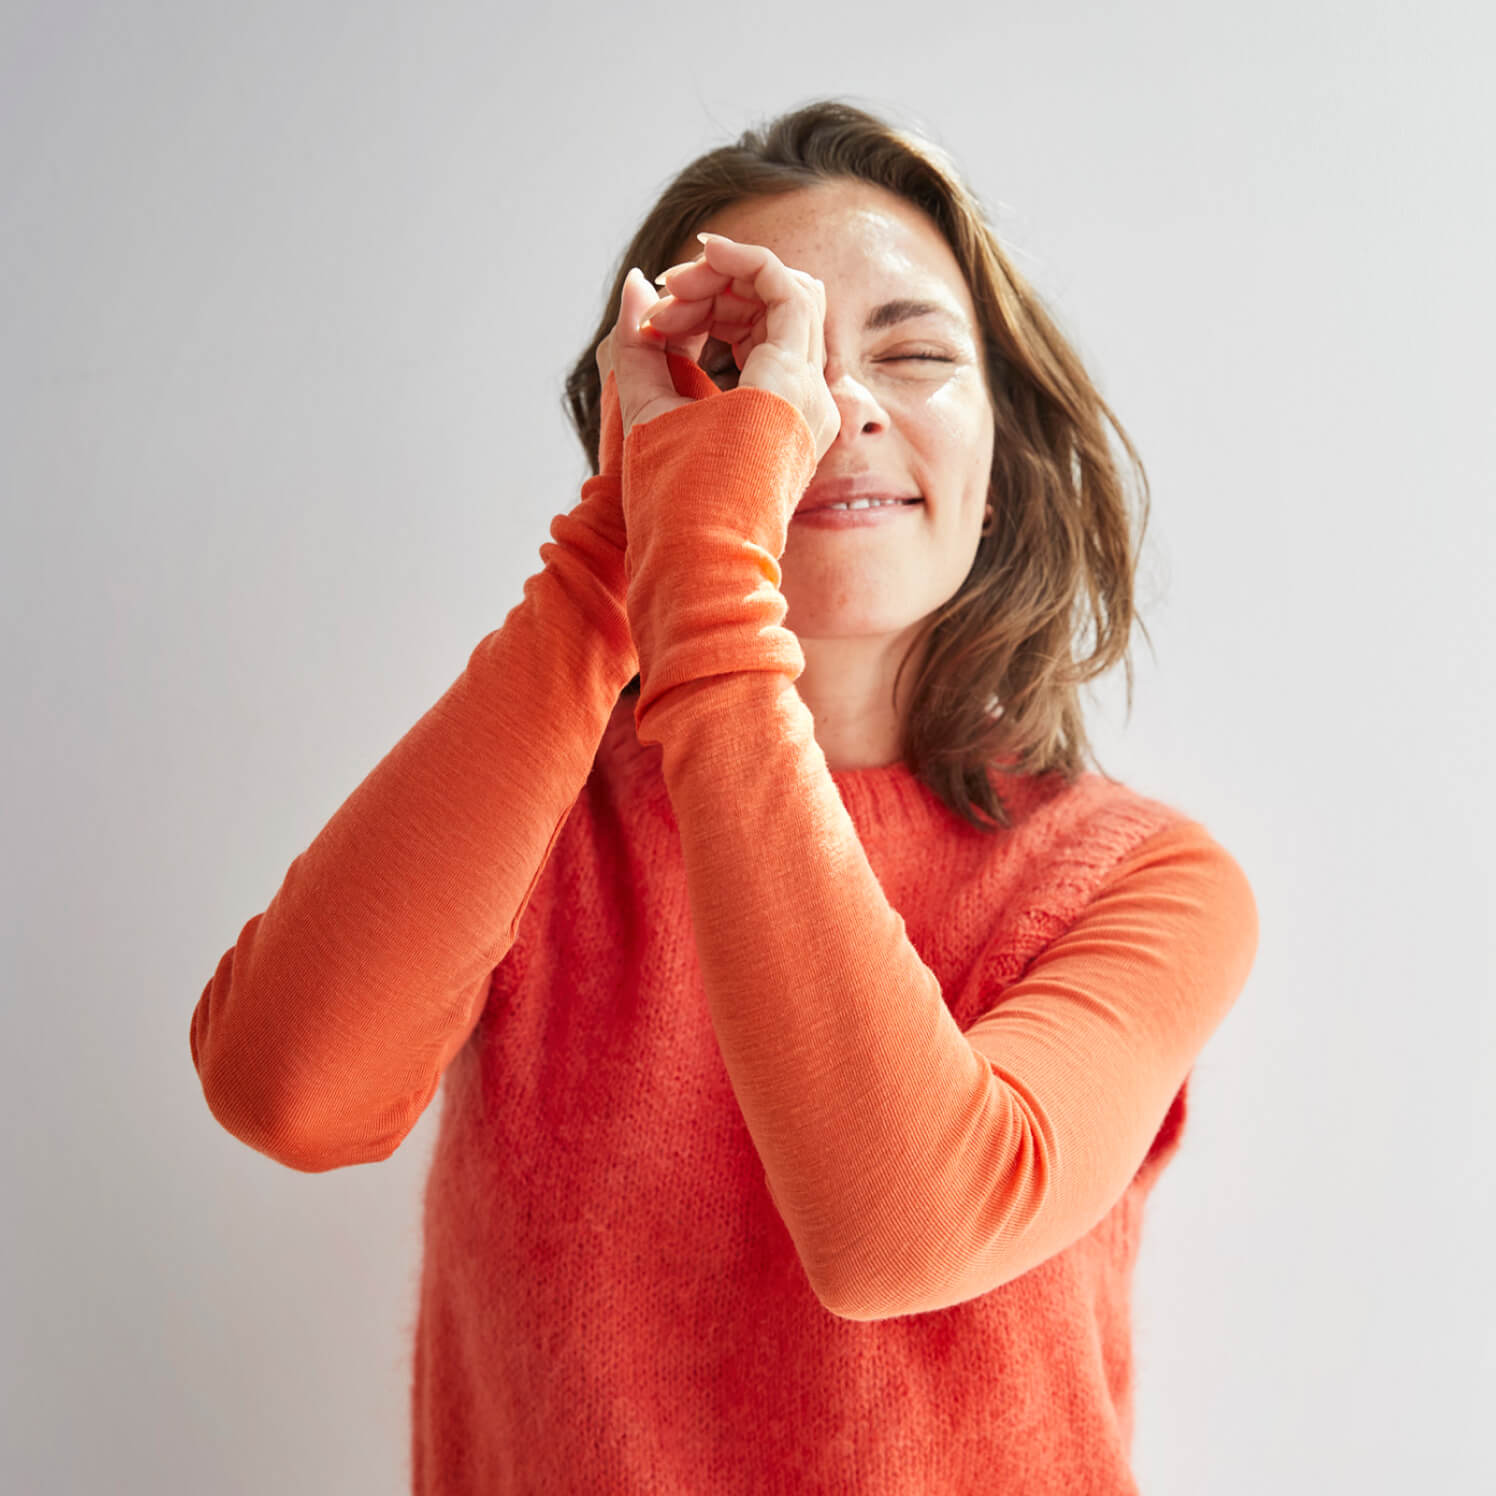 Eine Frau im orangen Pullover nutzt ihre Hände als Fernglas und schaut symbolisch in die Zukunft